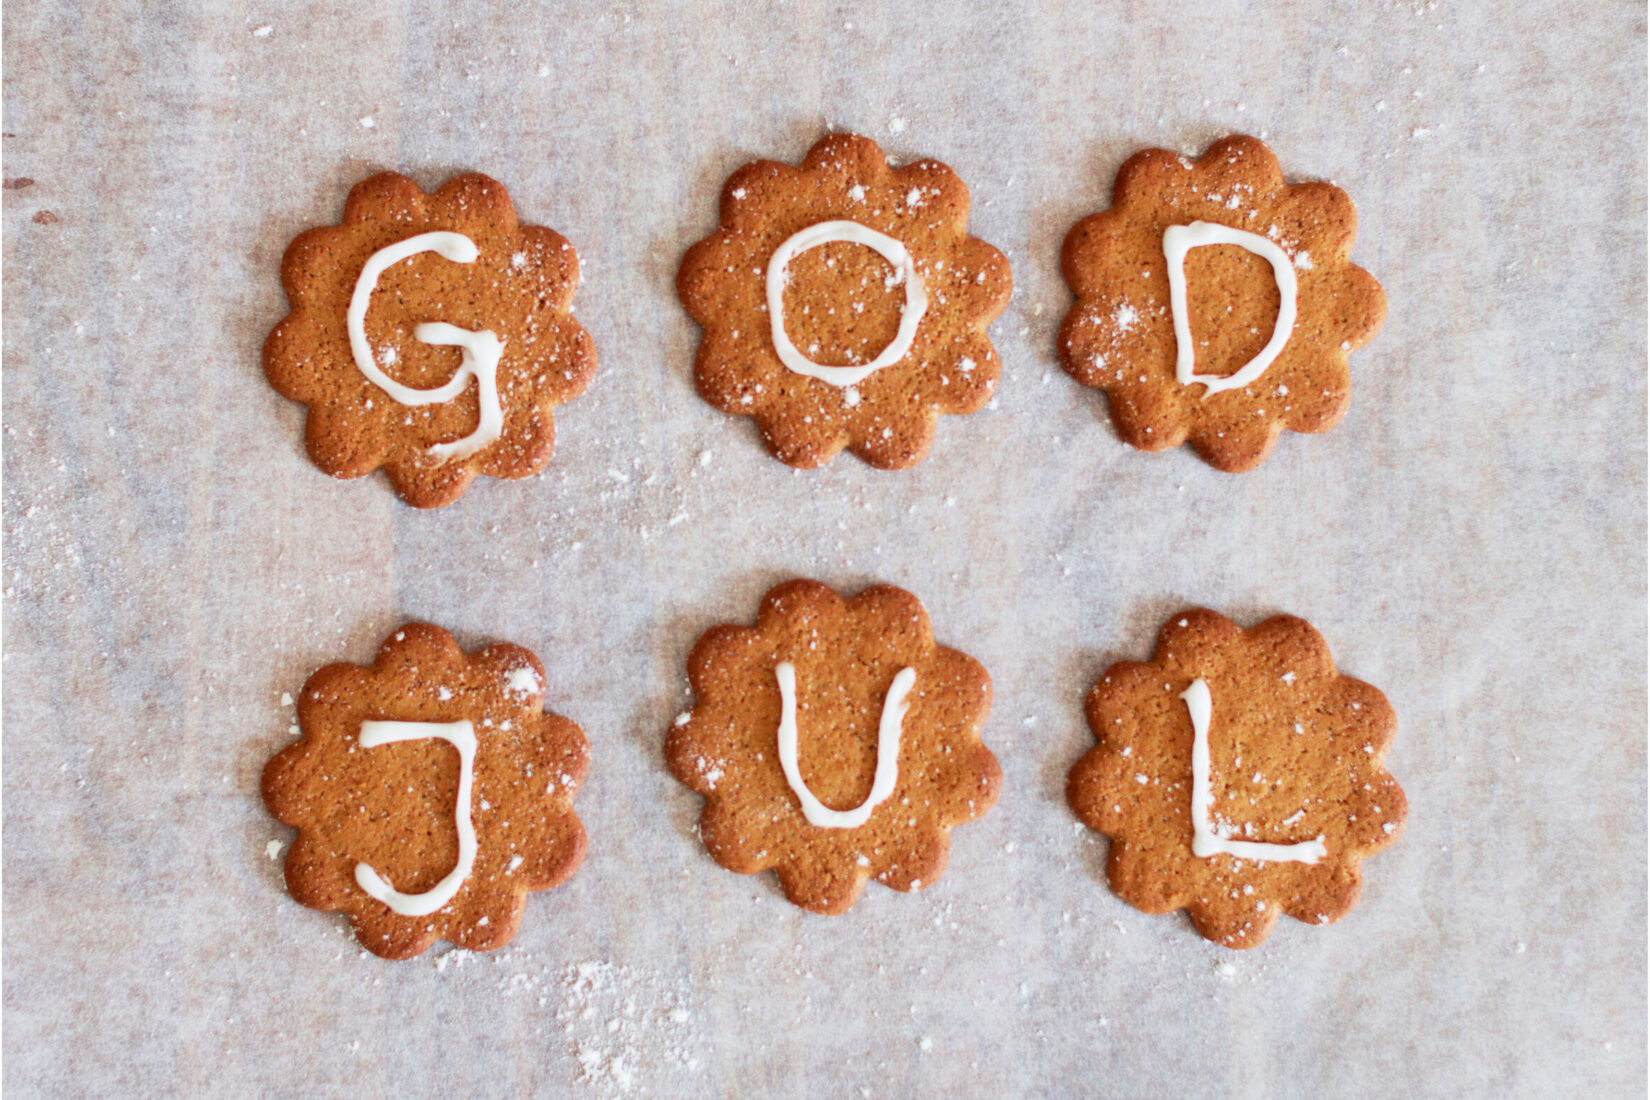 6 "pepparkakor" sur lesquels sont écrits au sucre glace les lettres qui forment "God Jul", "Joyeux Noël".